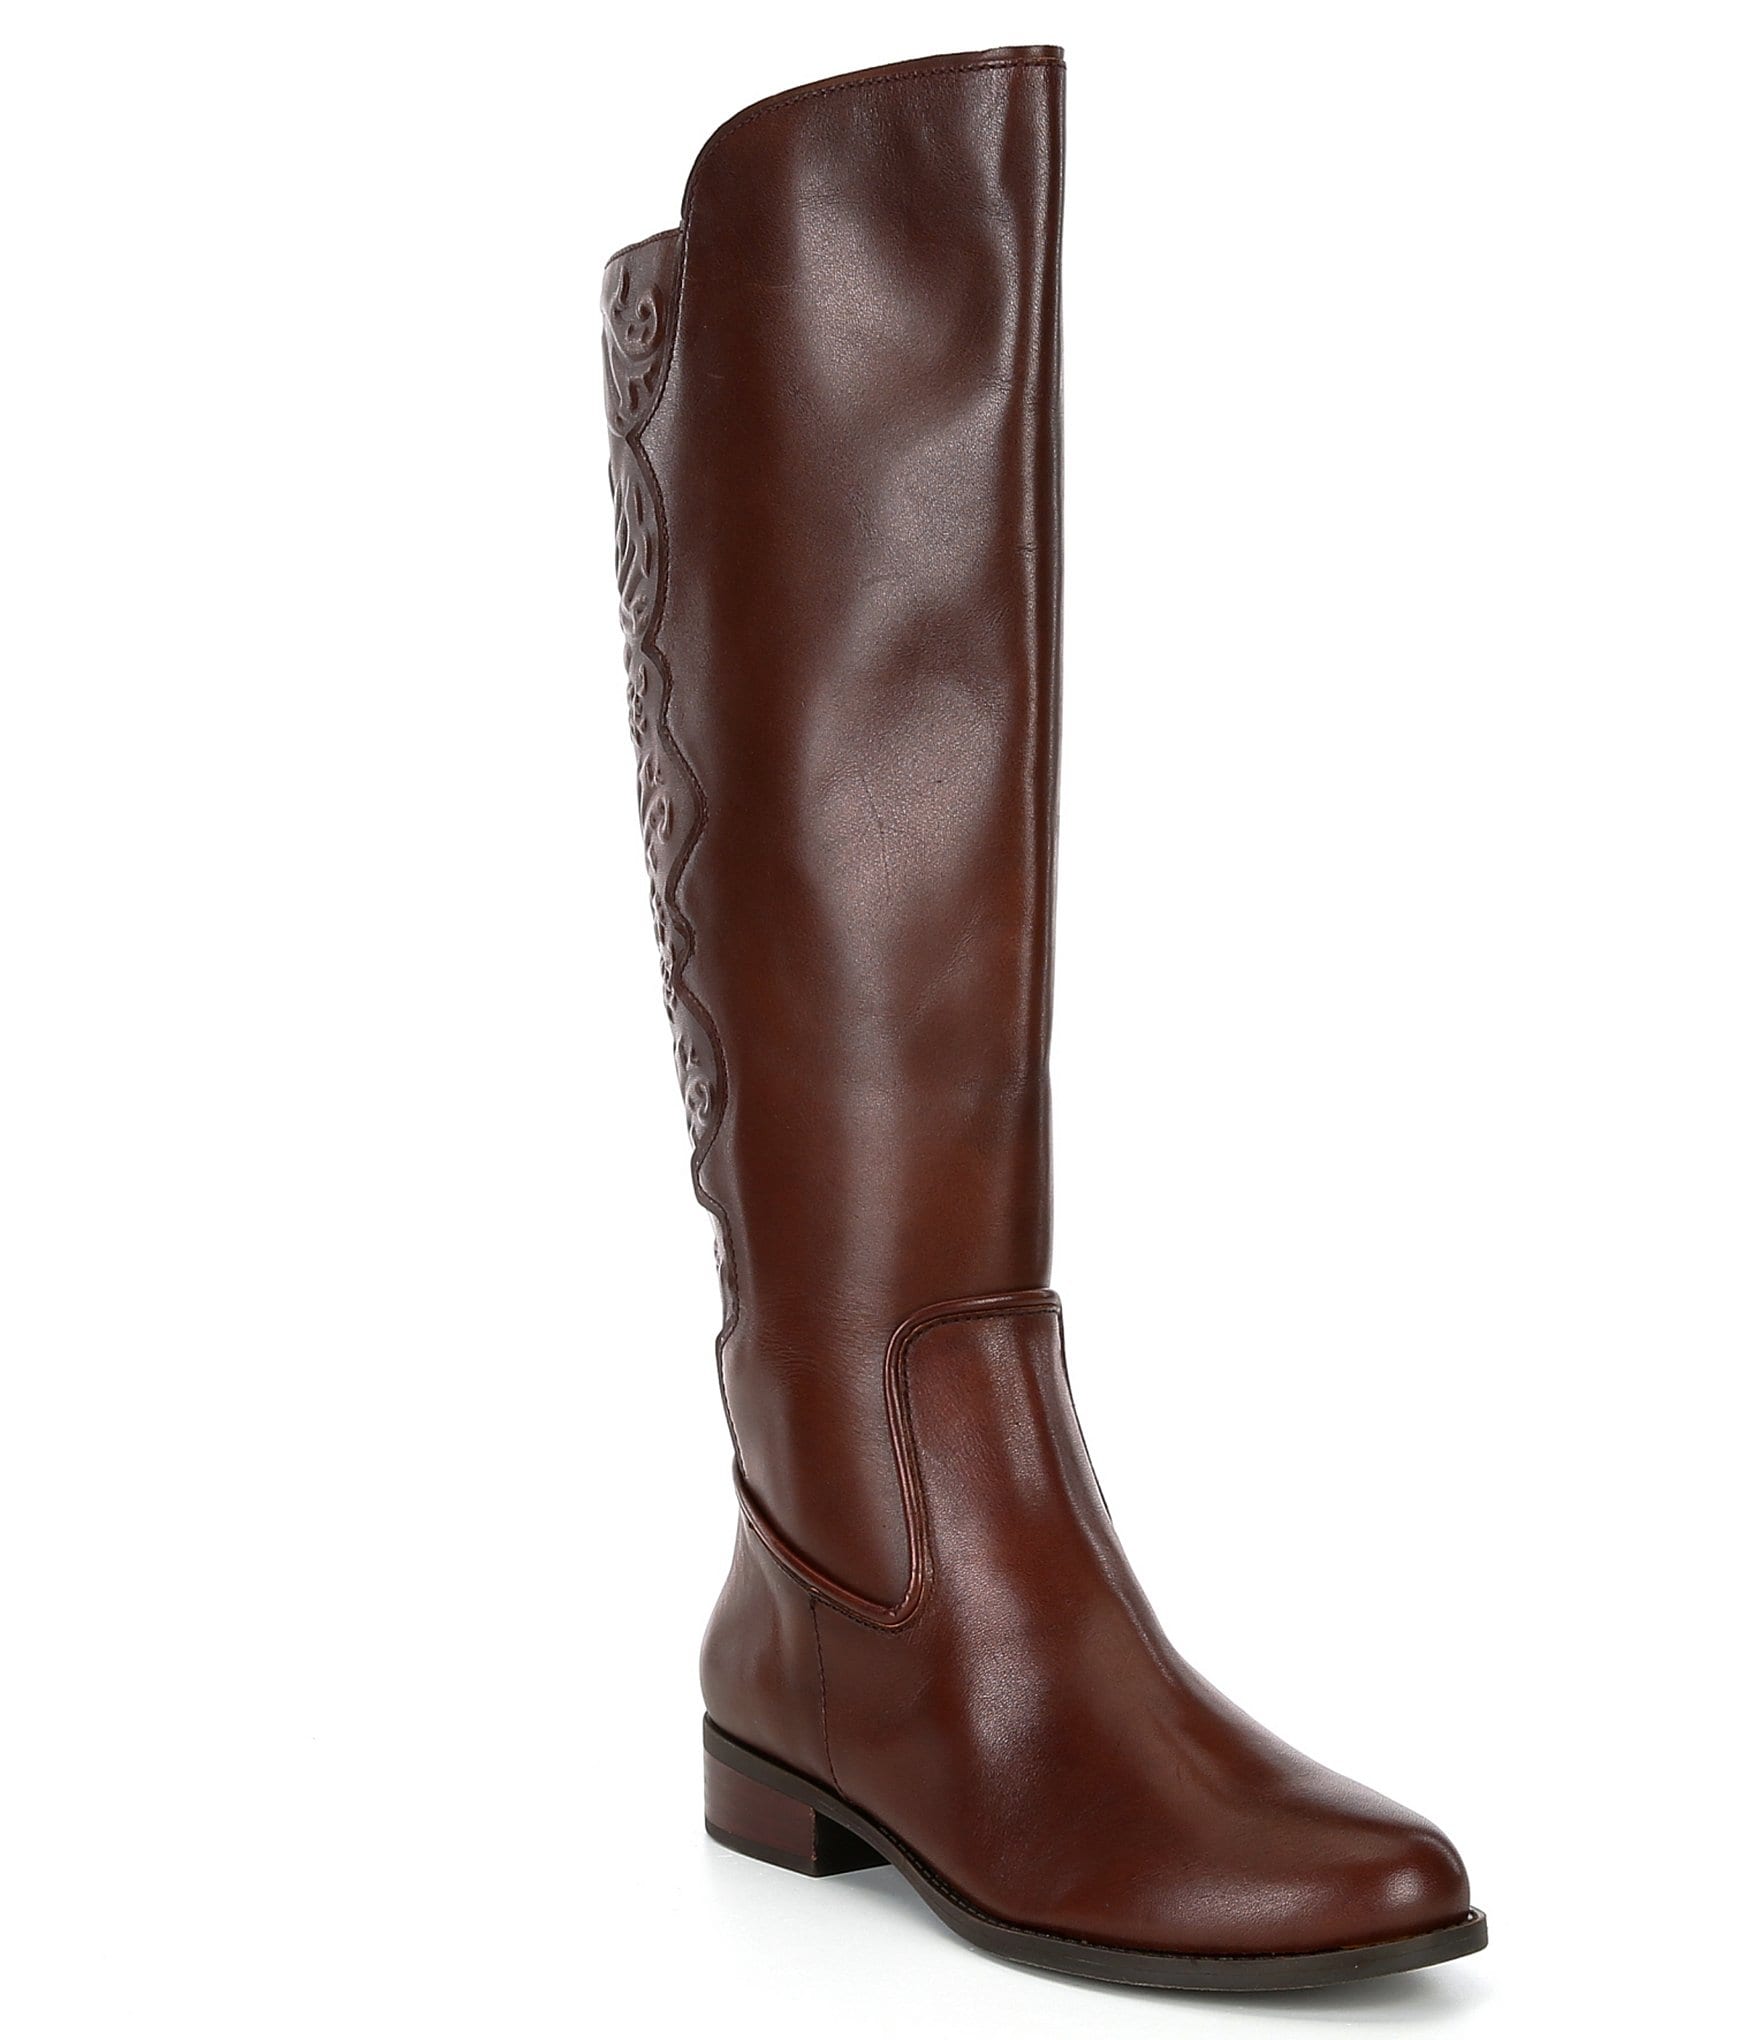 Gianni Bini Maddox Narrow Calf Embossed Leather Riding Boots | Dillard's